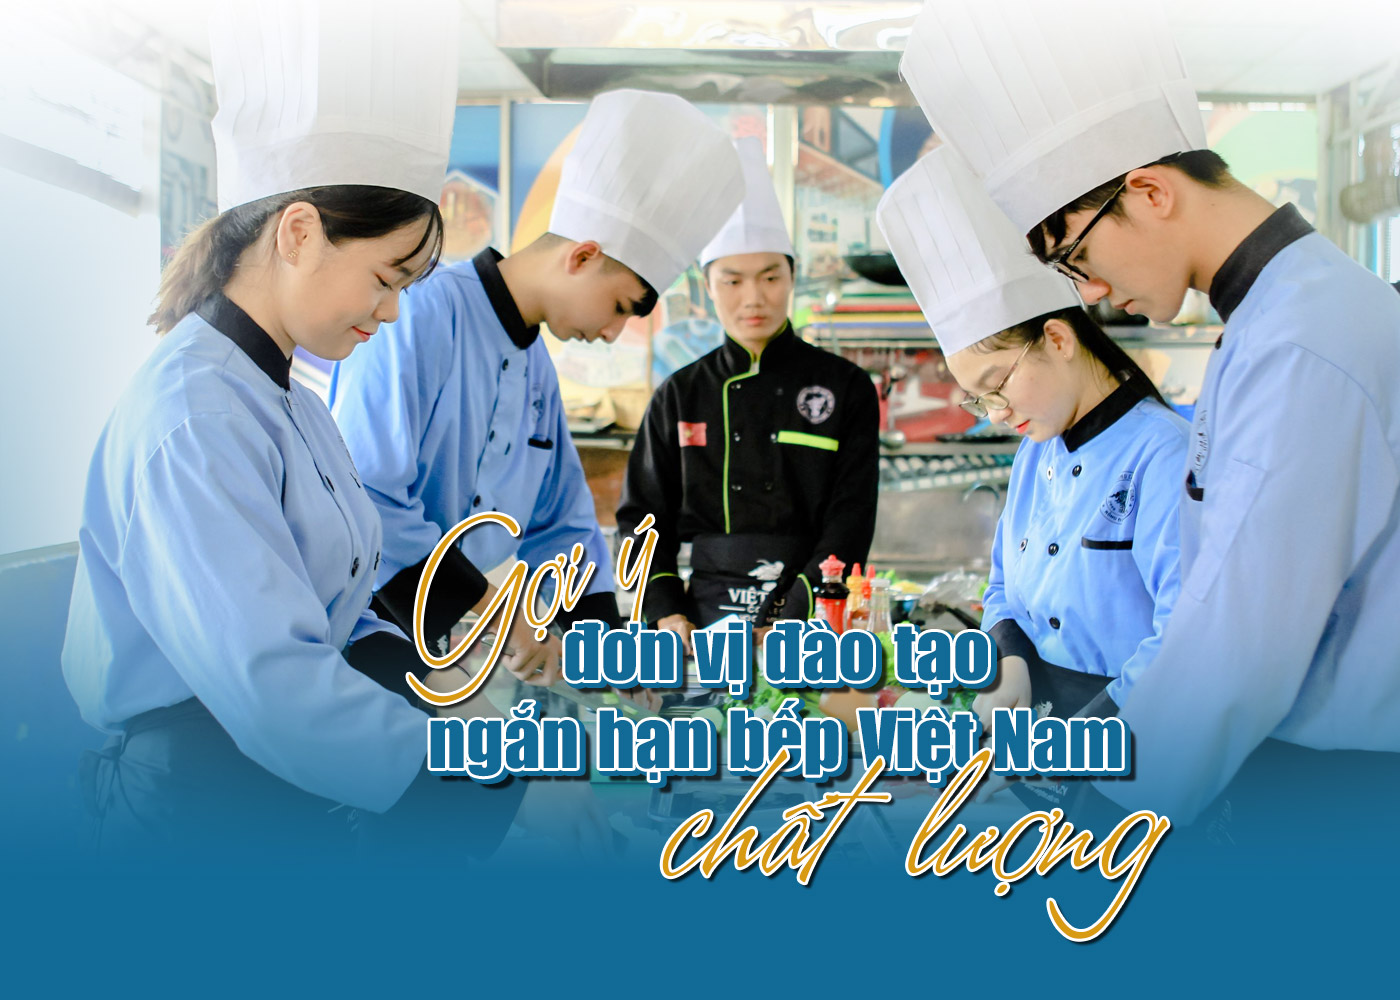 Gợi ý đơn vị đào tạo ngắn hạn bếp Việt Nam chất lượng - Ảnh 1